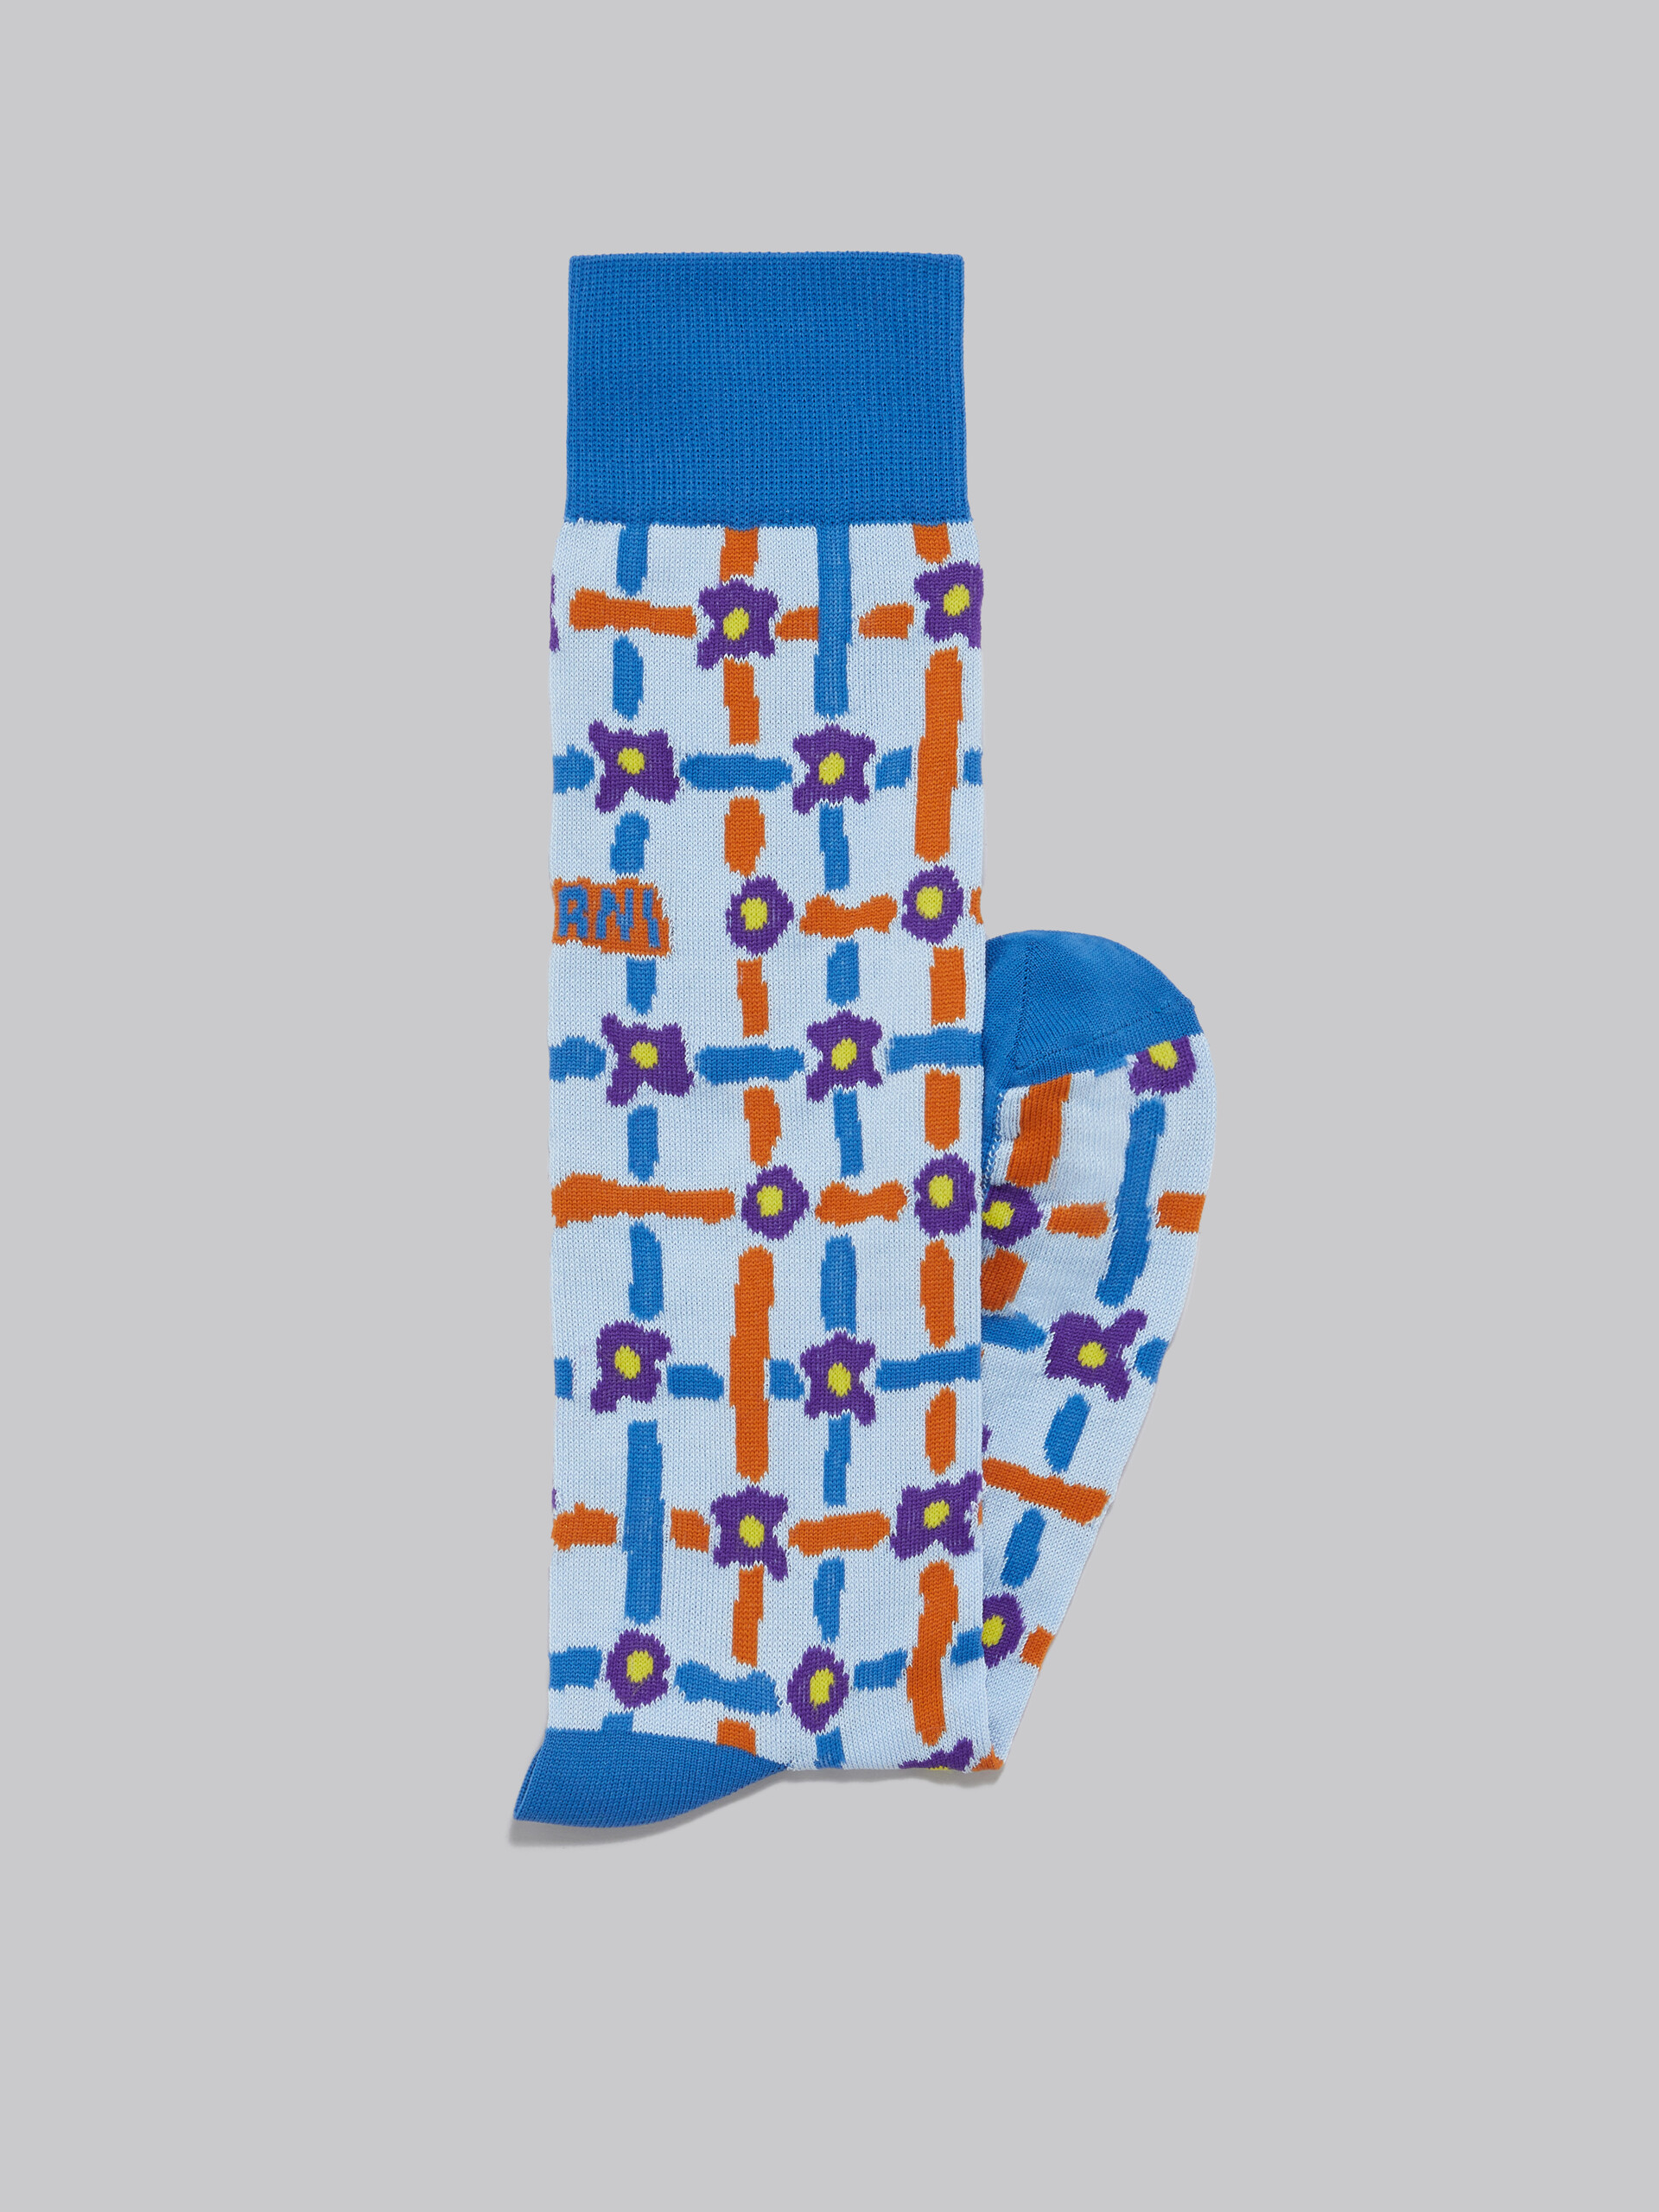 Calzini in cotone azzurro con motivo Saraband - Calze - Image 2